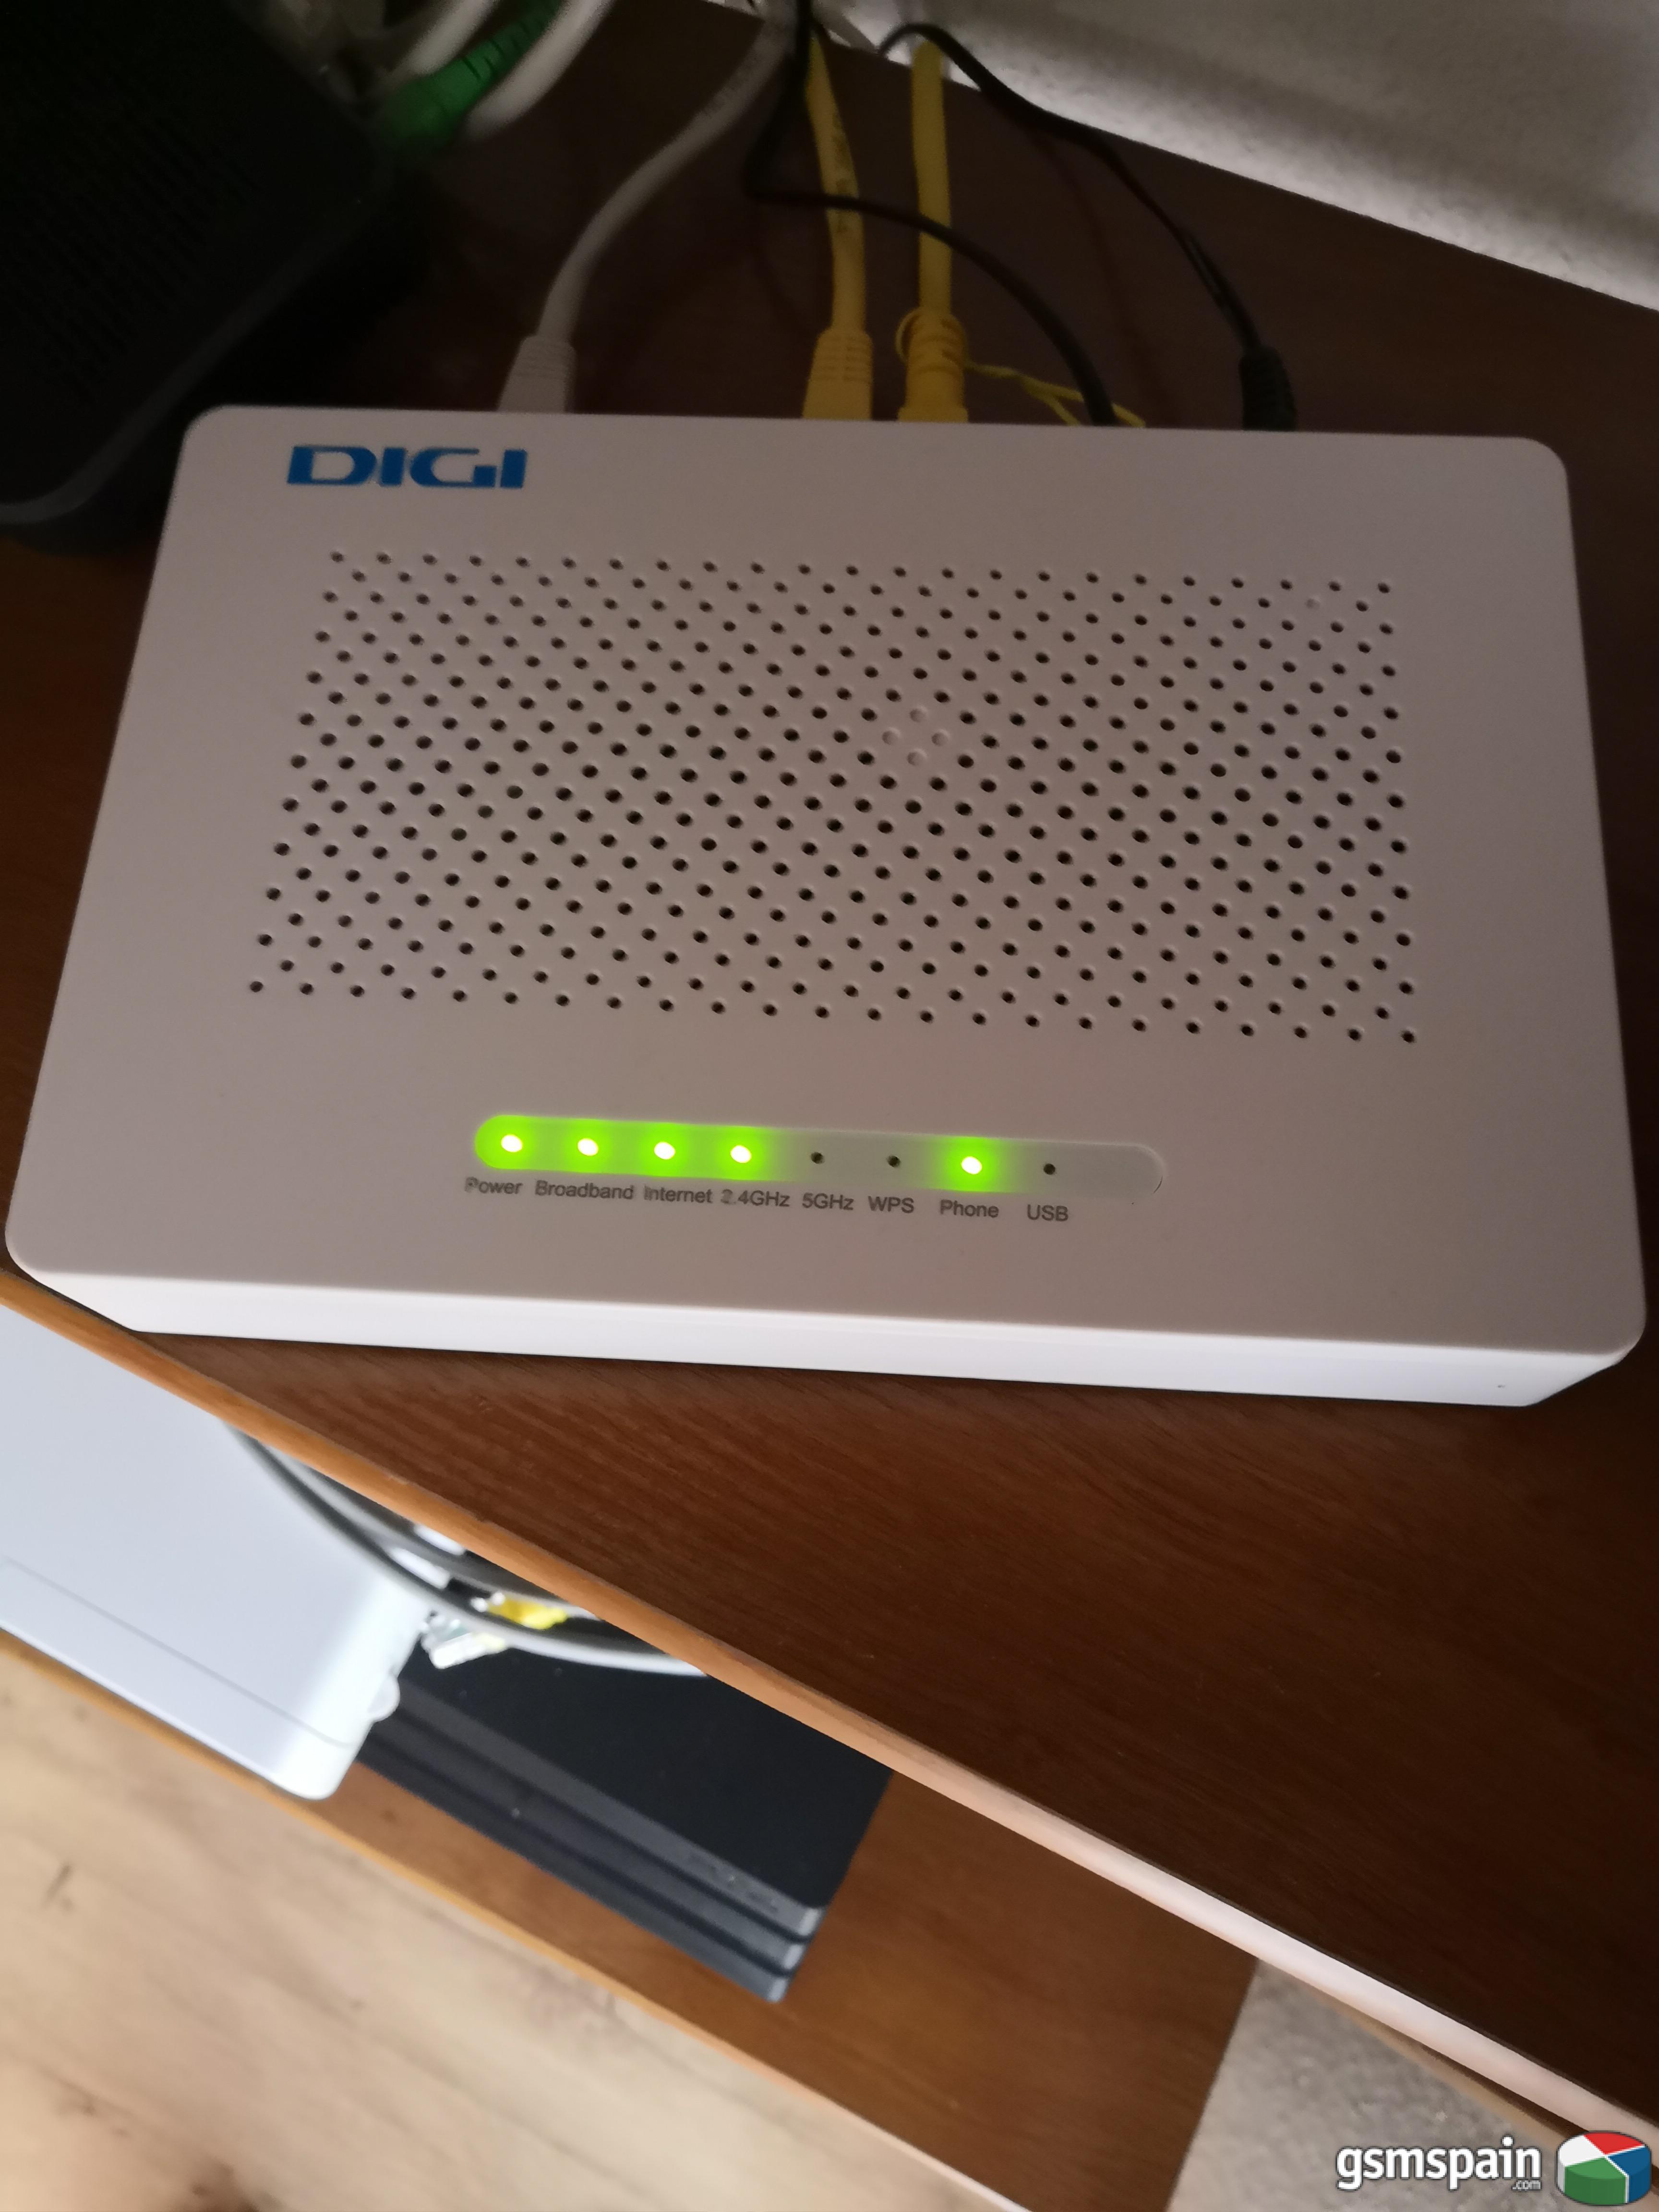 [HILO OFICIAL] DigiMvil se prepara para ofrecer Fibra y ADSL Indirecto a travs de Neba